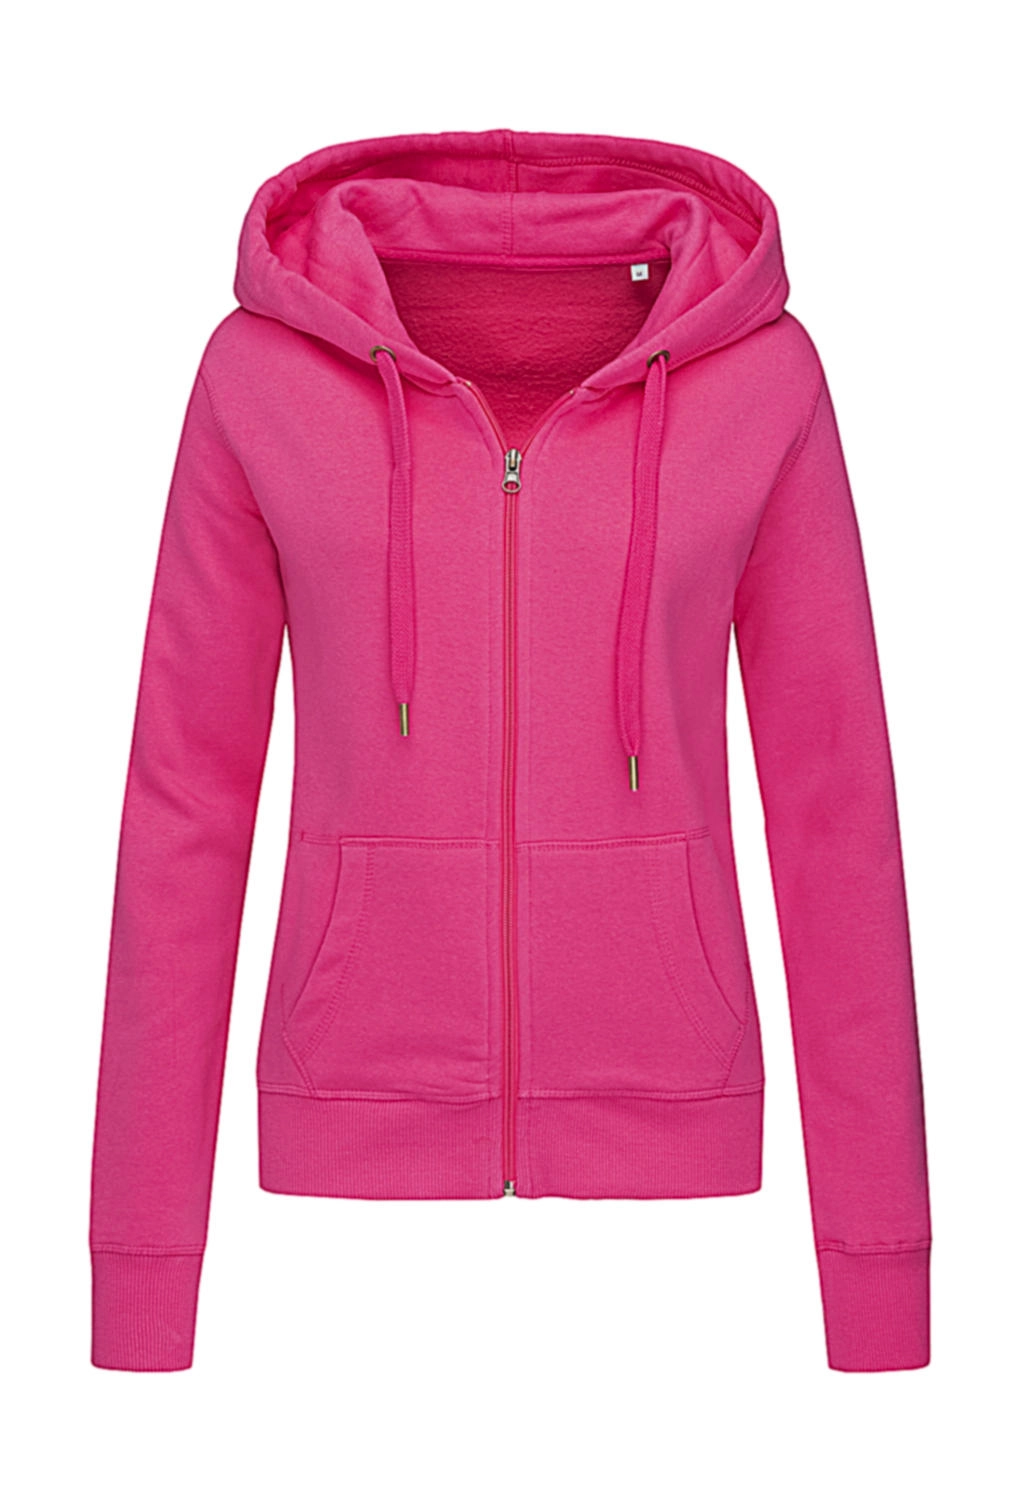 Sweat Jacket Select Women zum Besticken und Bedrucken in der Farbe Sweet Pink mit Ihren Logo, Schriftzug oder Motiv.